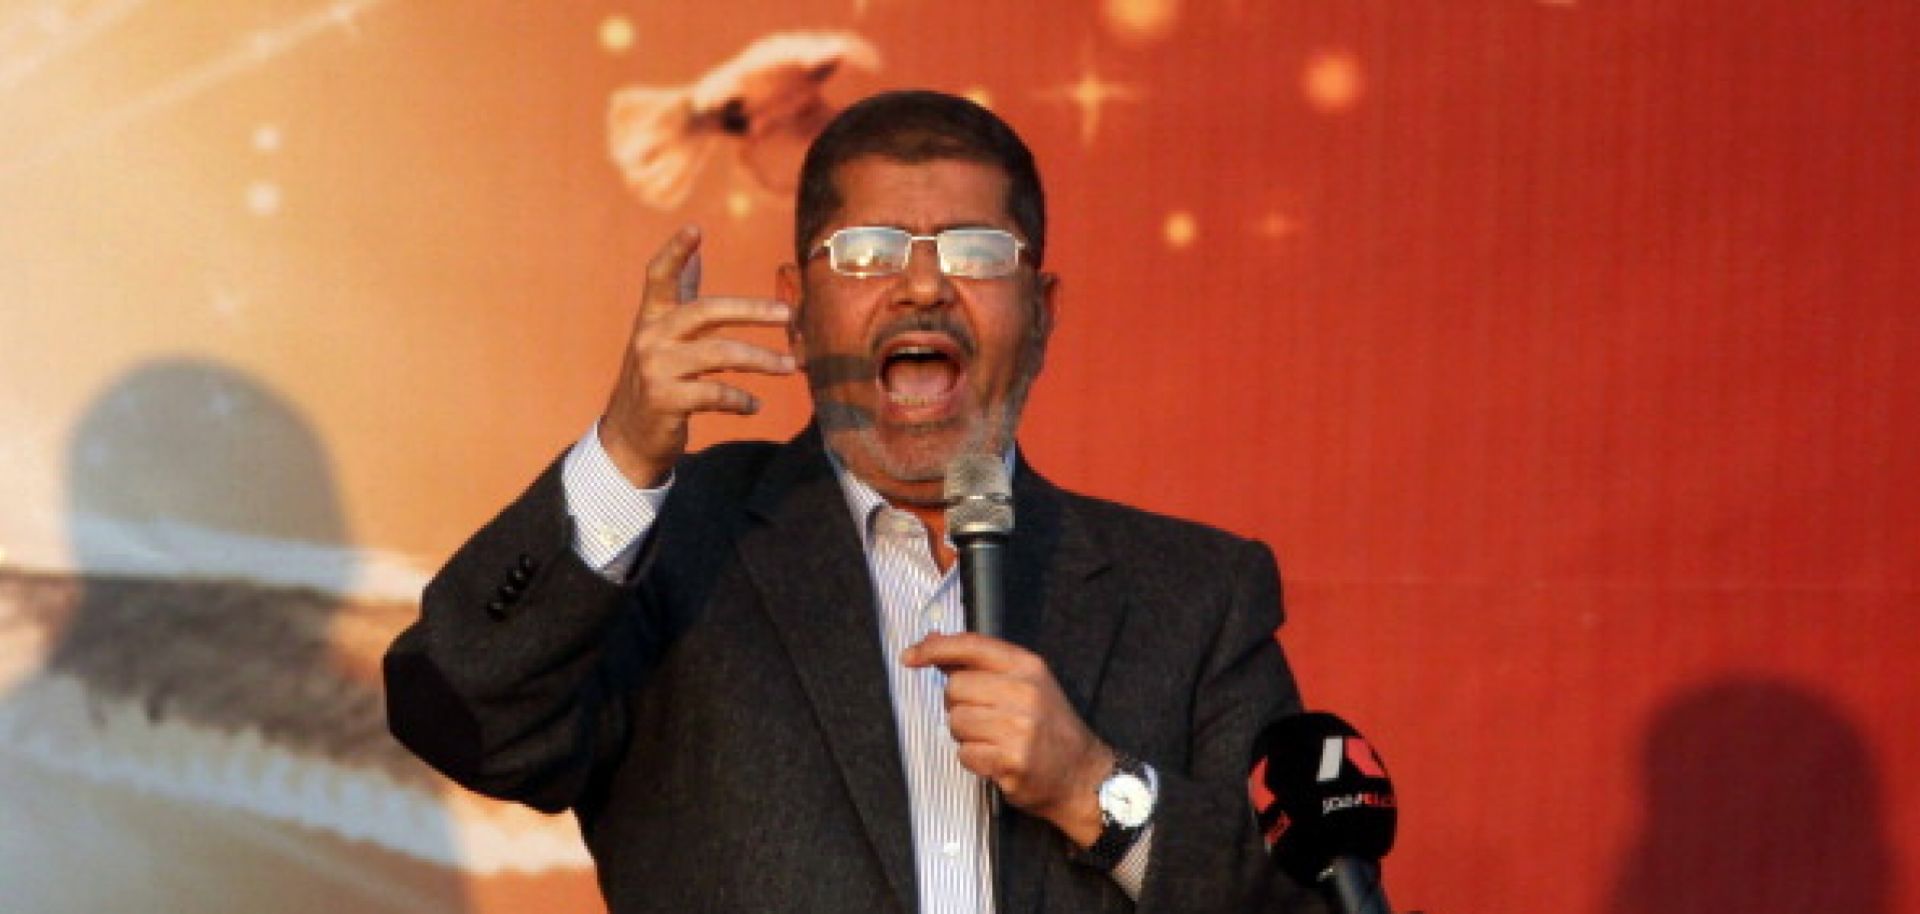 Egyptian President Mohammed Morsi in Cairo on Nov. 23